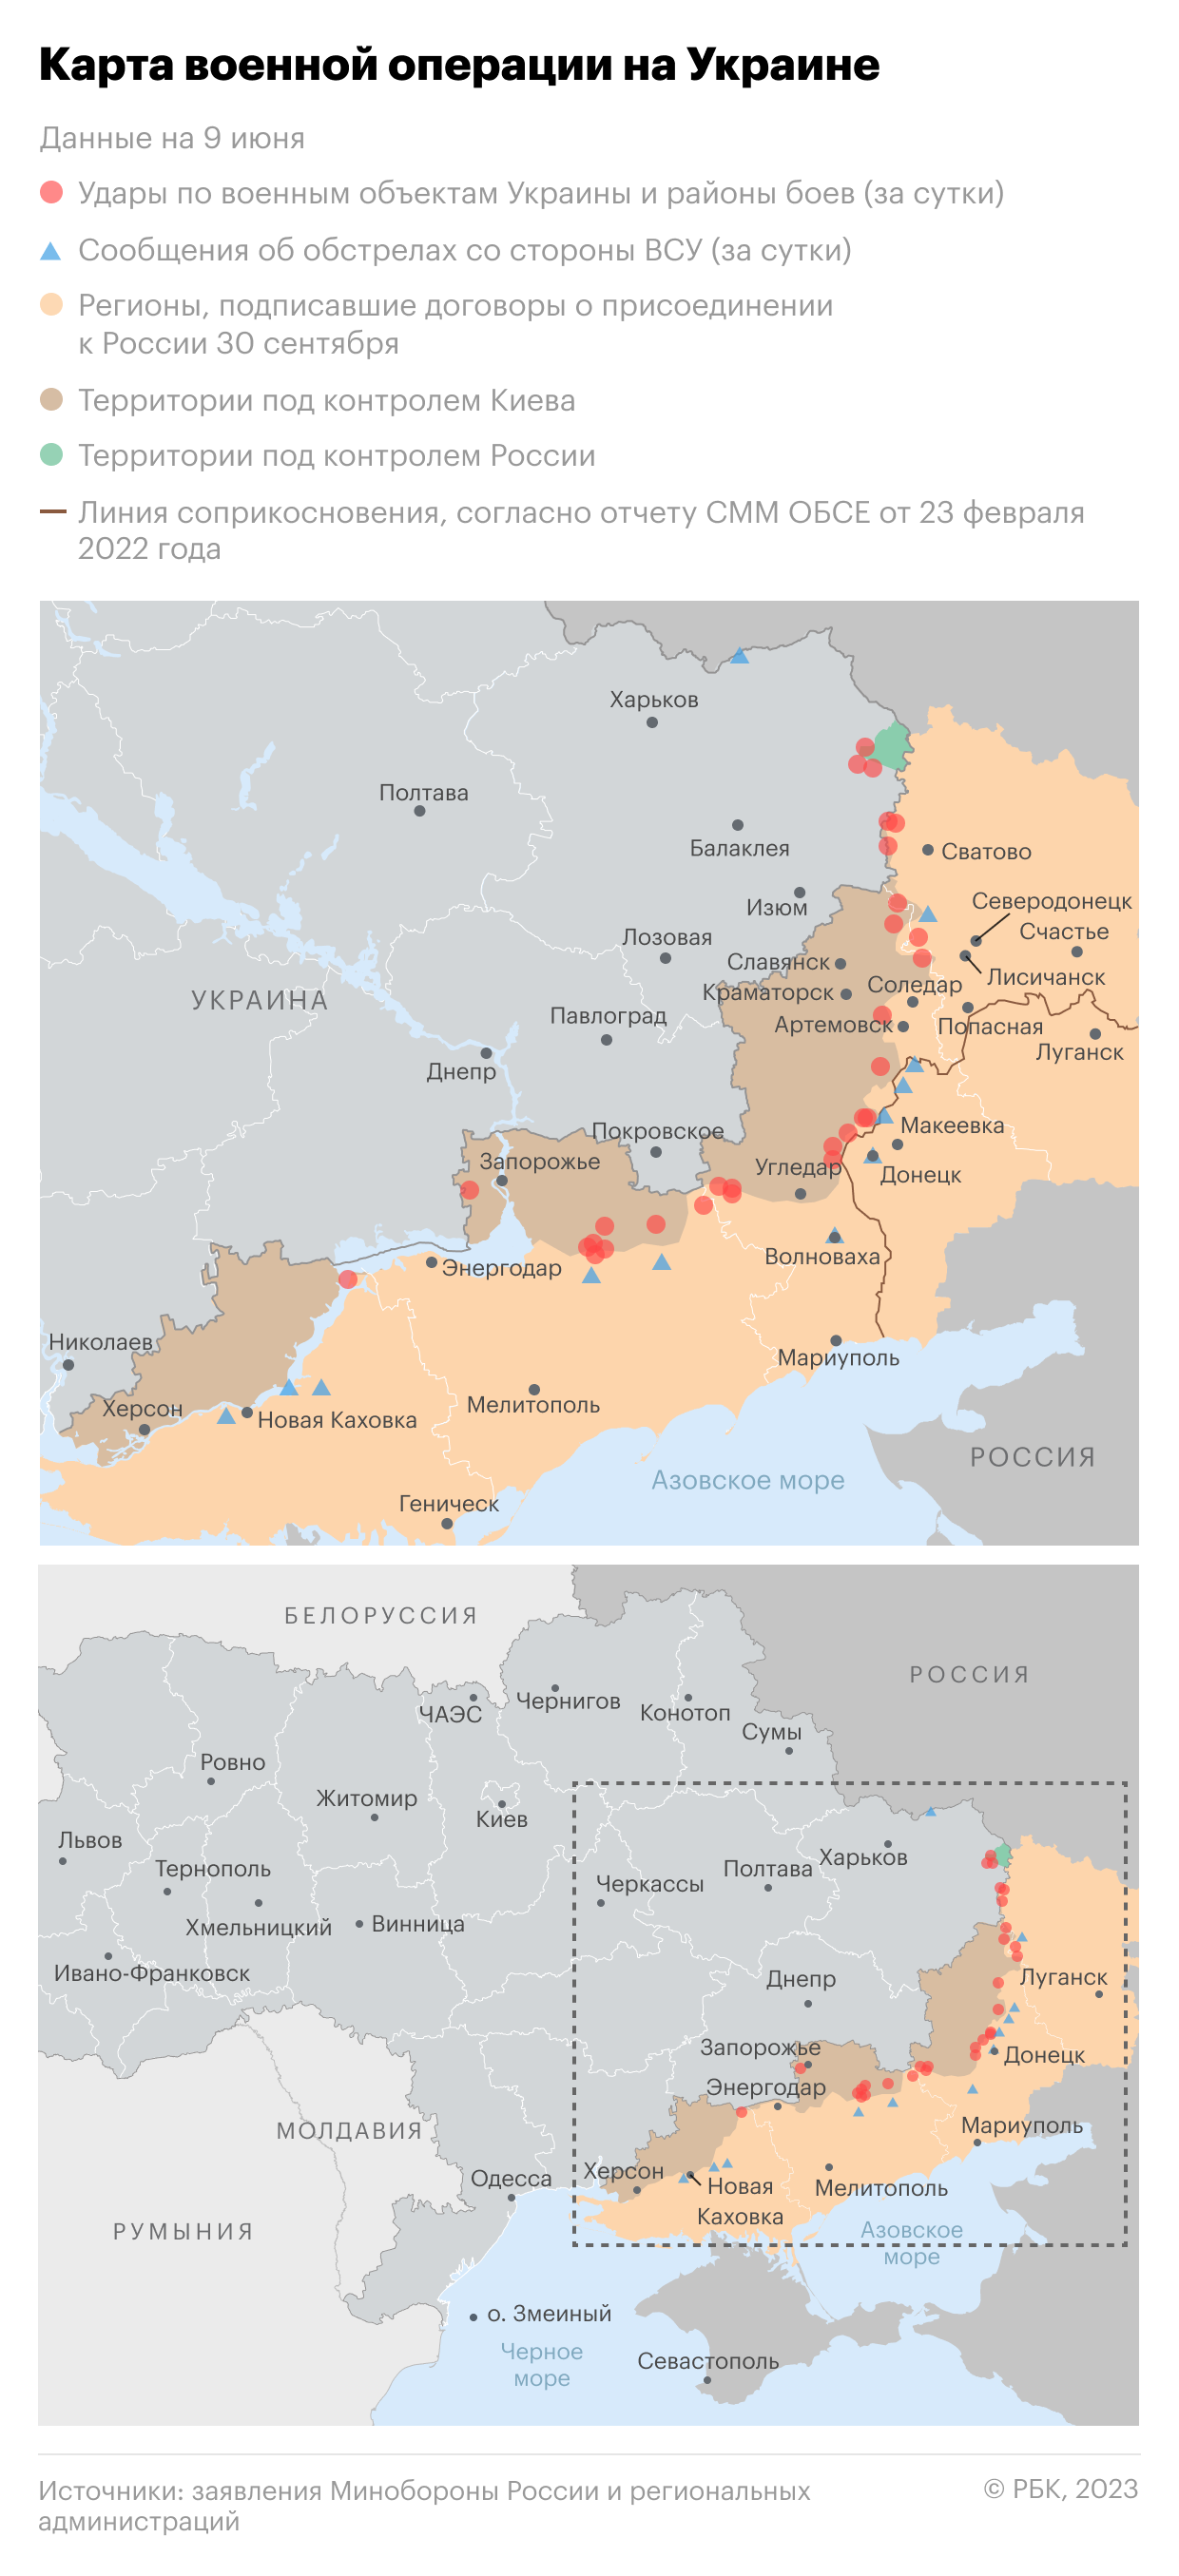 Военная операция на Украине. Карта на 9 июня